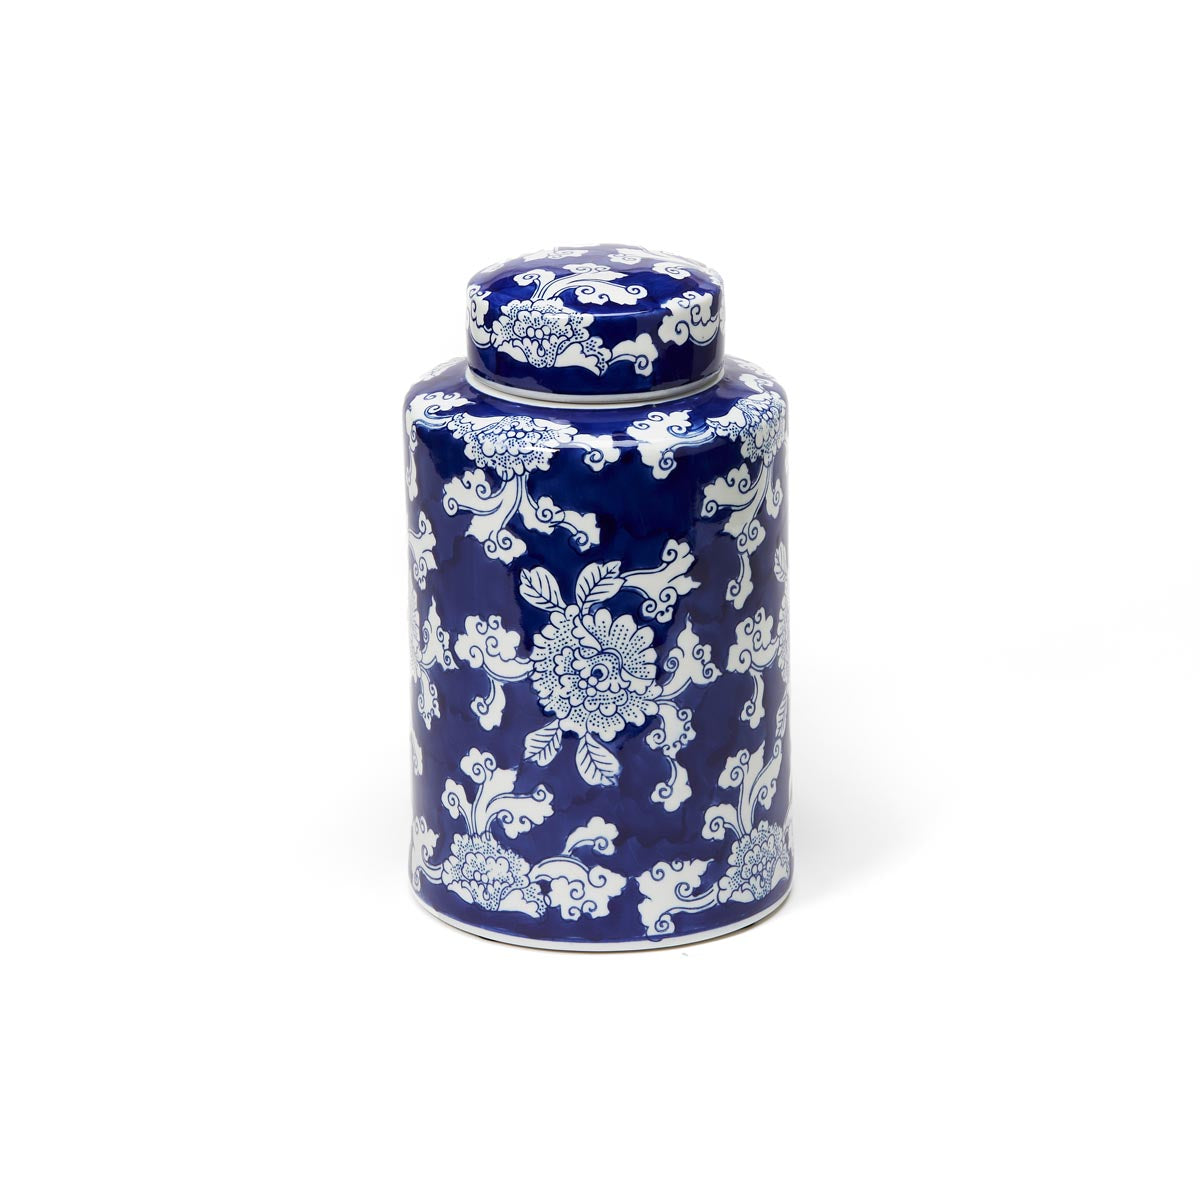 Chinoiserie Porcelain Tea Caddy